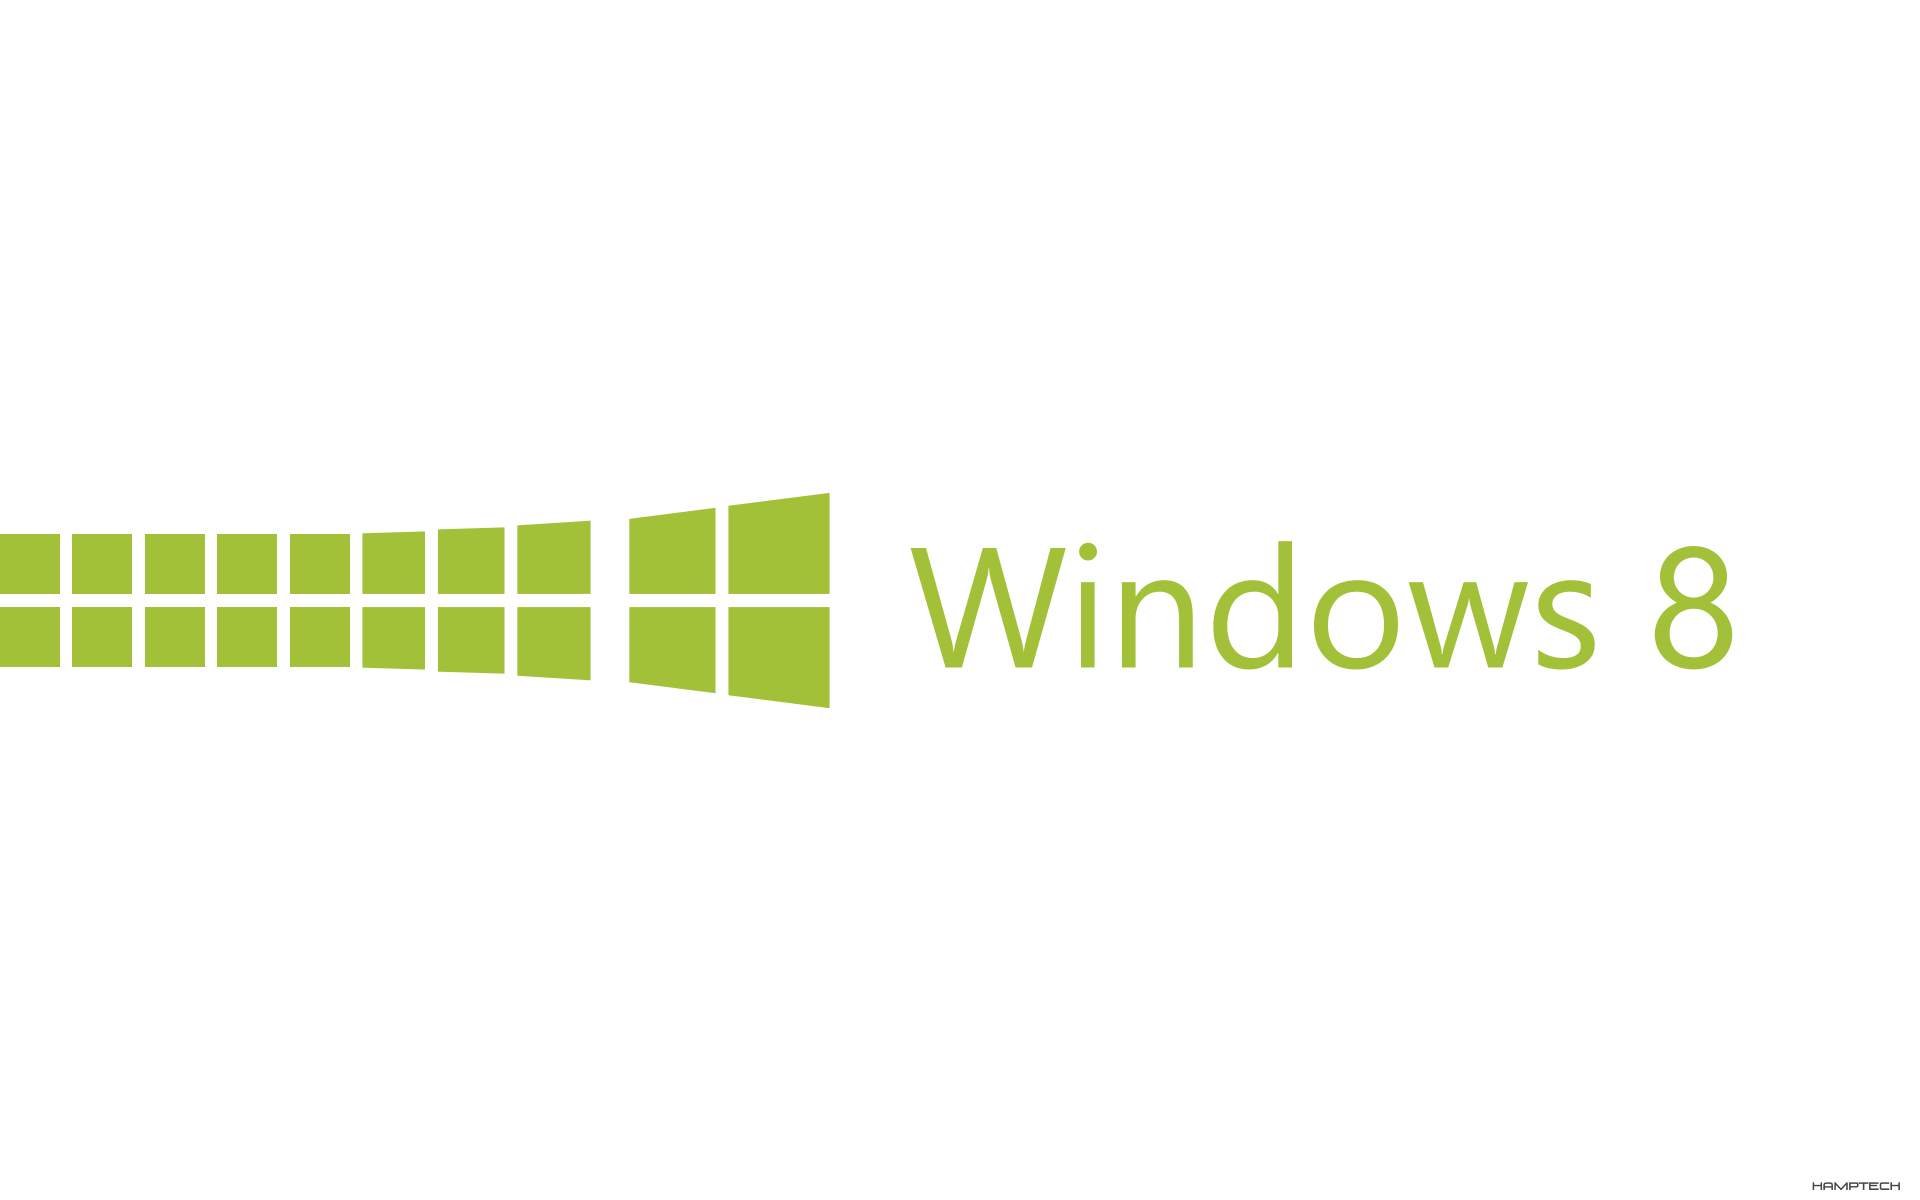 WP7-LIME_whitebg_Windows8Wallpaper_byHamptech.png